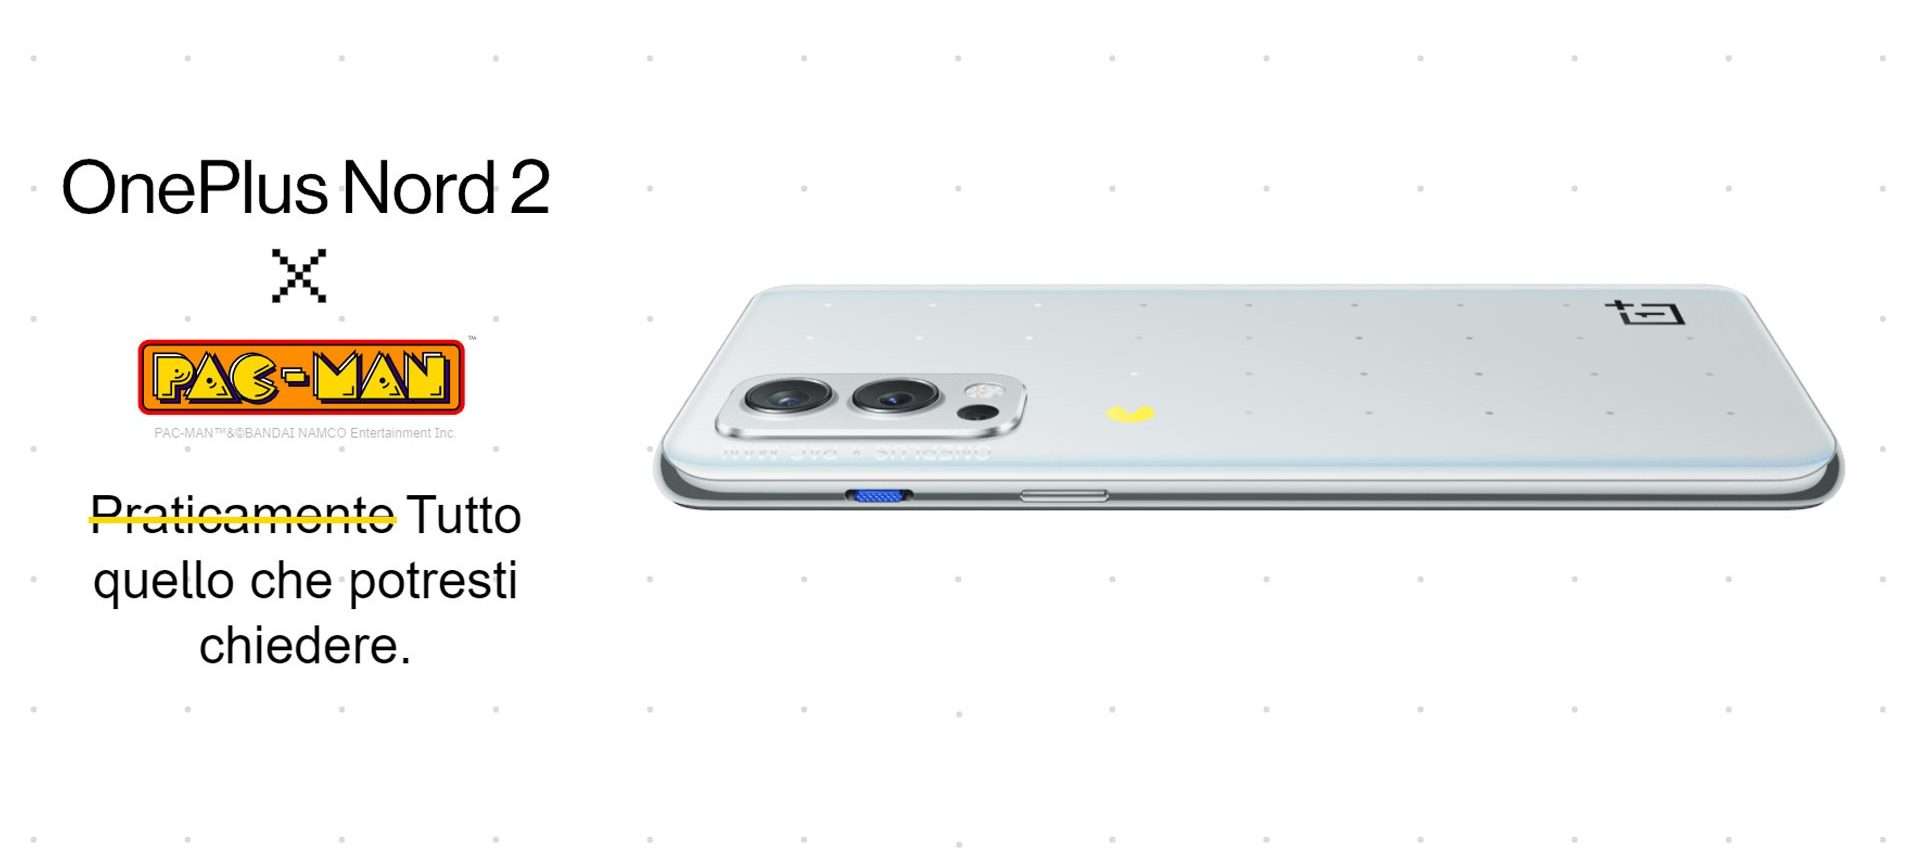 OnePlus Nord 2 (12/256 GB) in sconto a 209€ su Amazon: è un VERO AFFARE